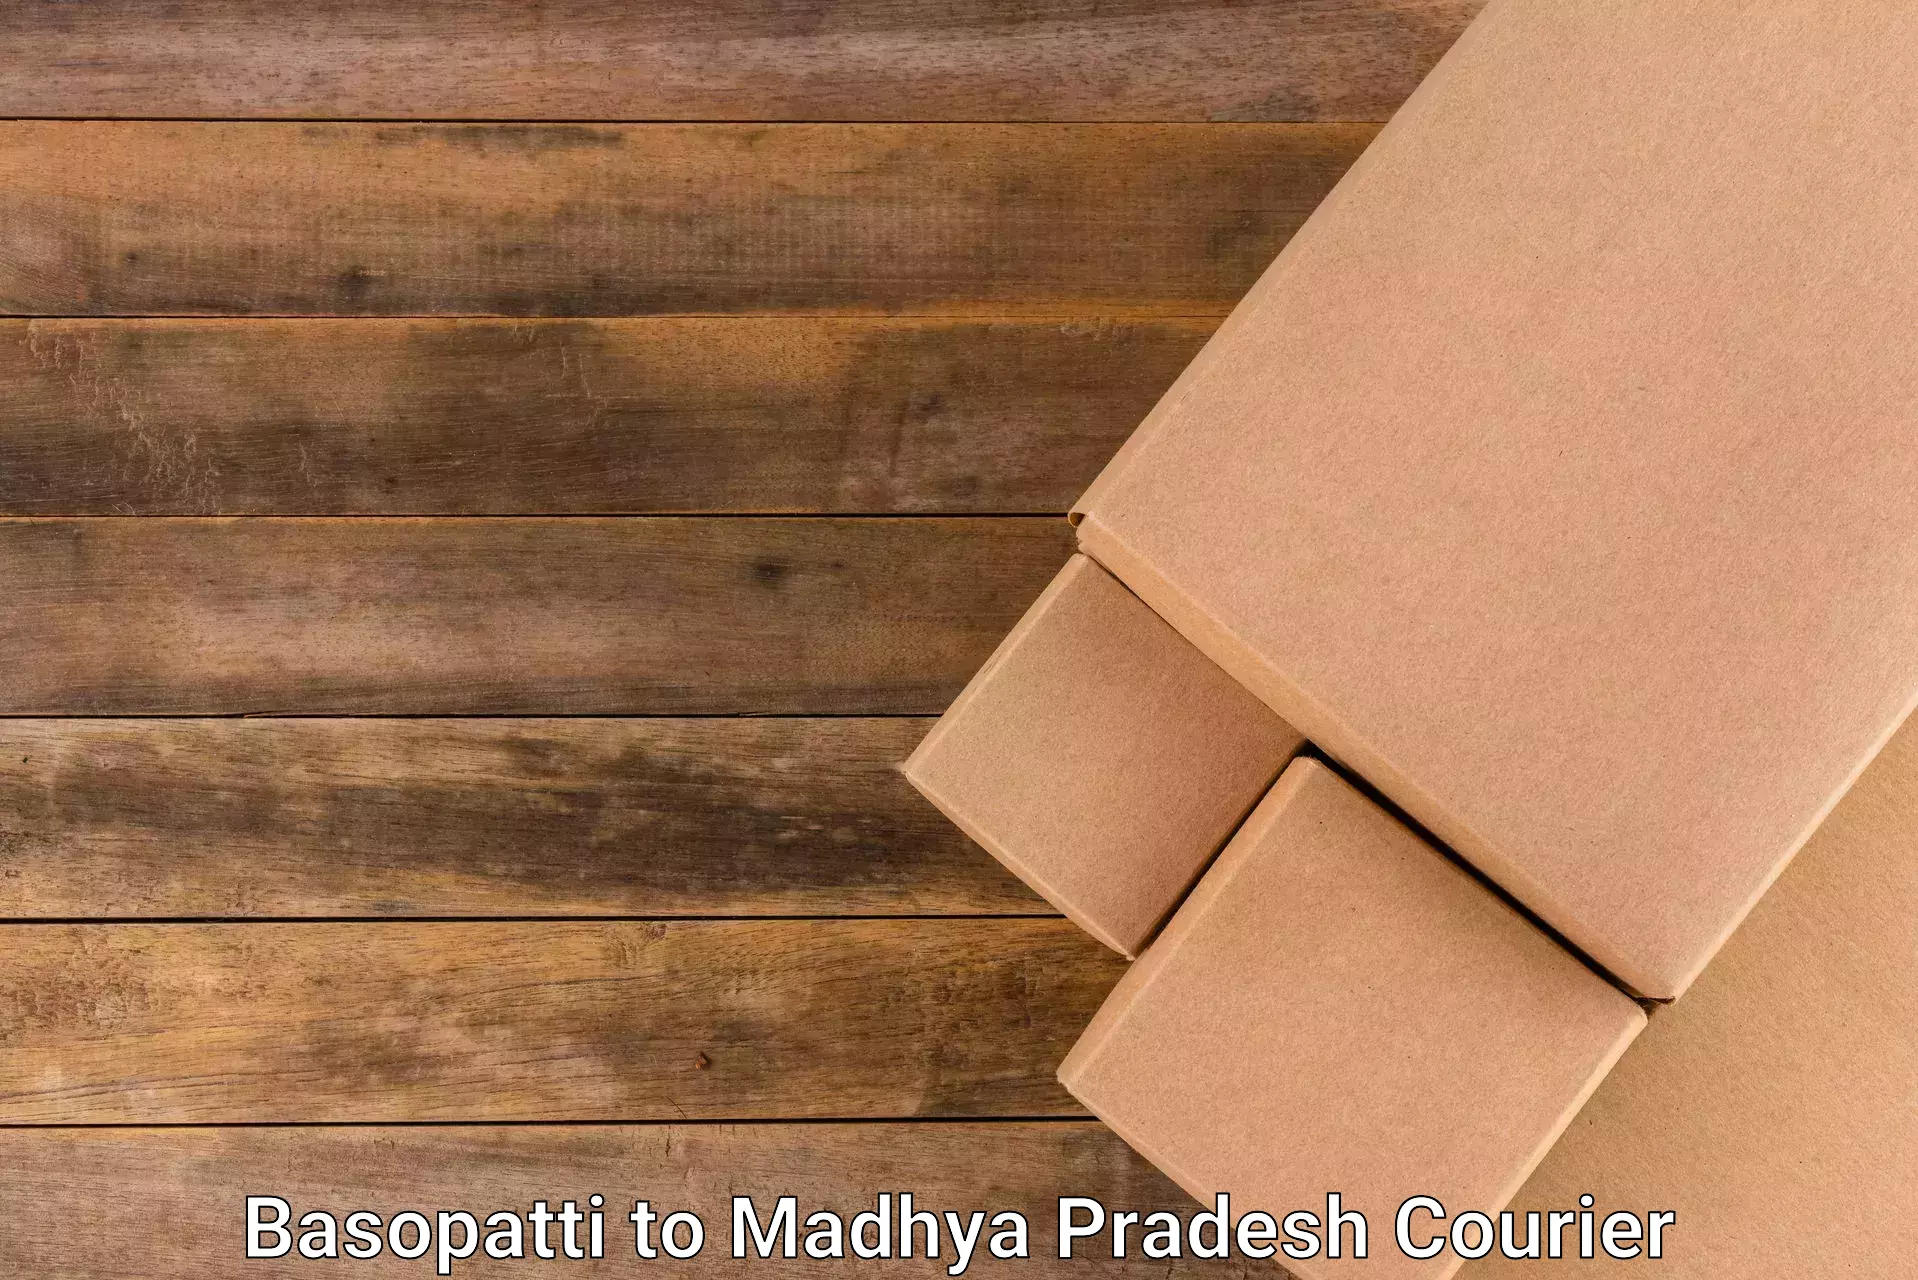 Overnight delivery services Basopatti to Narsinghgarh